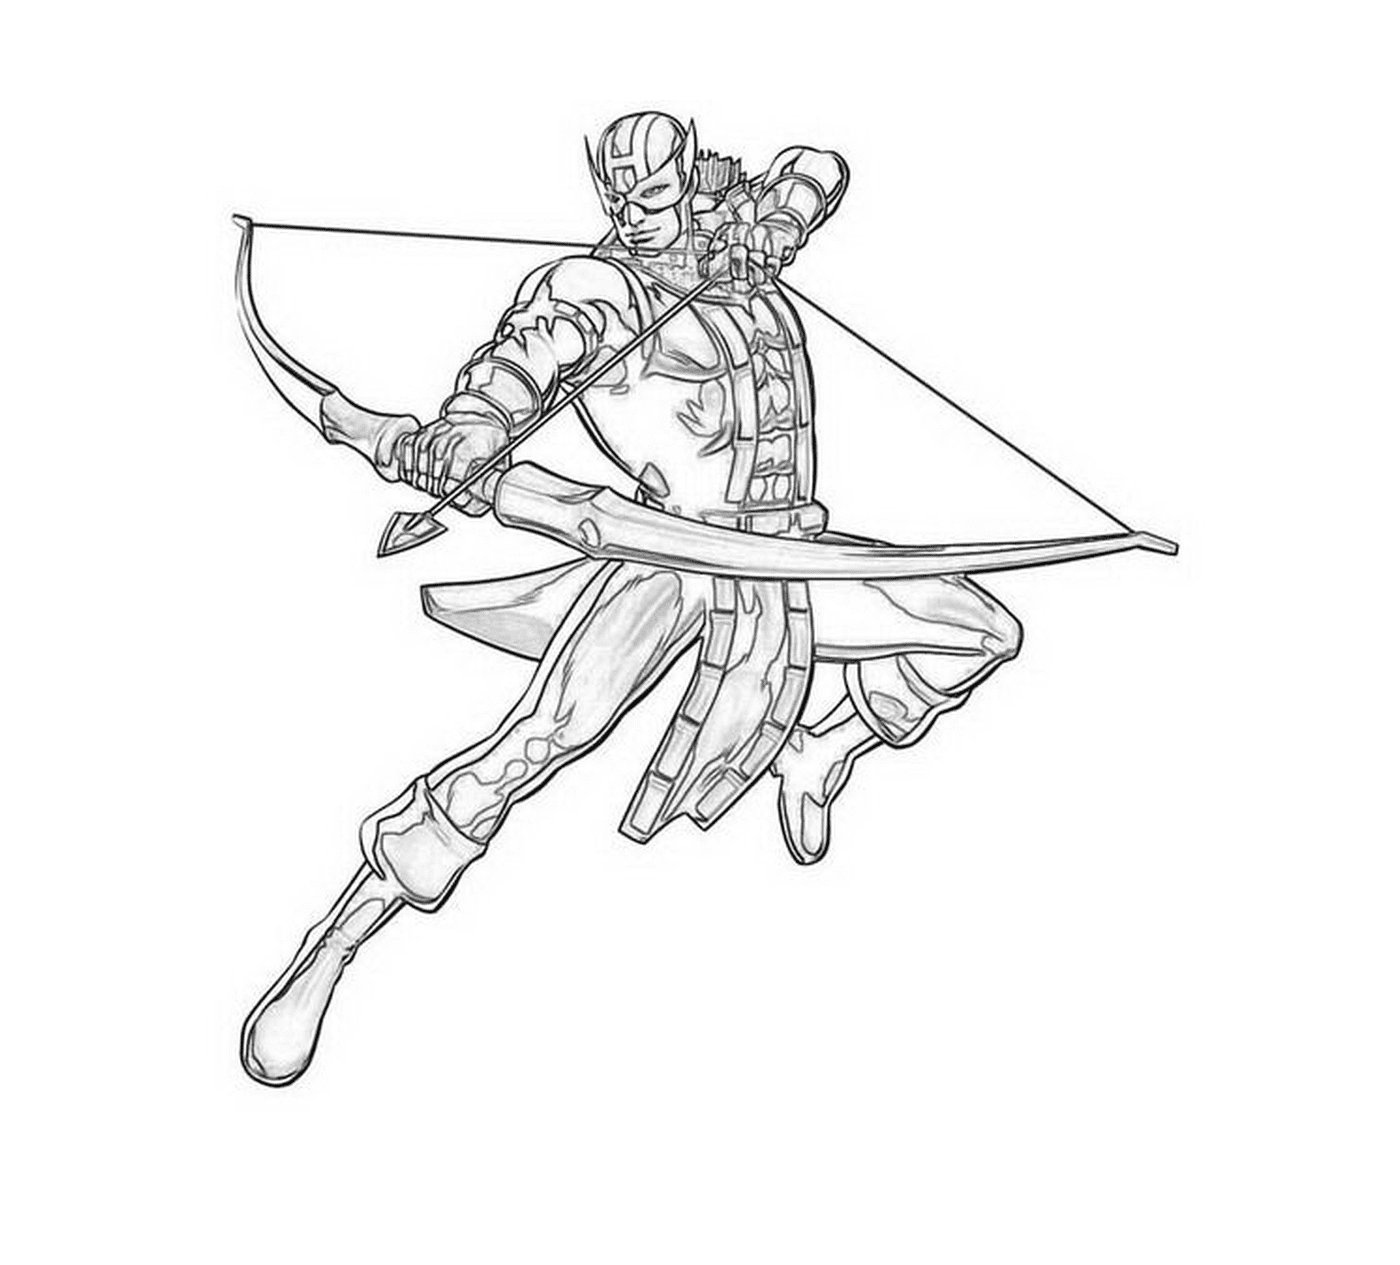  Человек, держащий лук и стрелы 